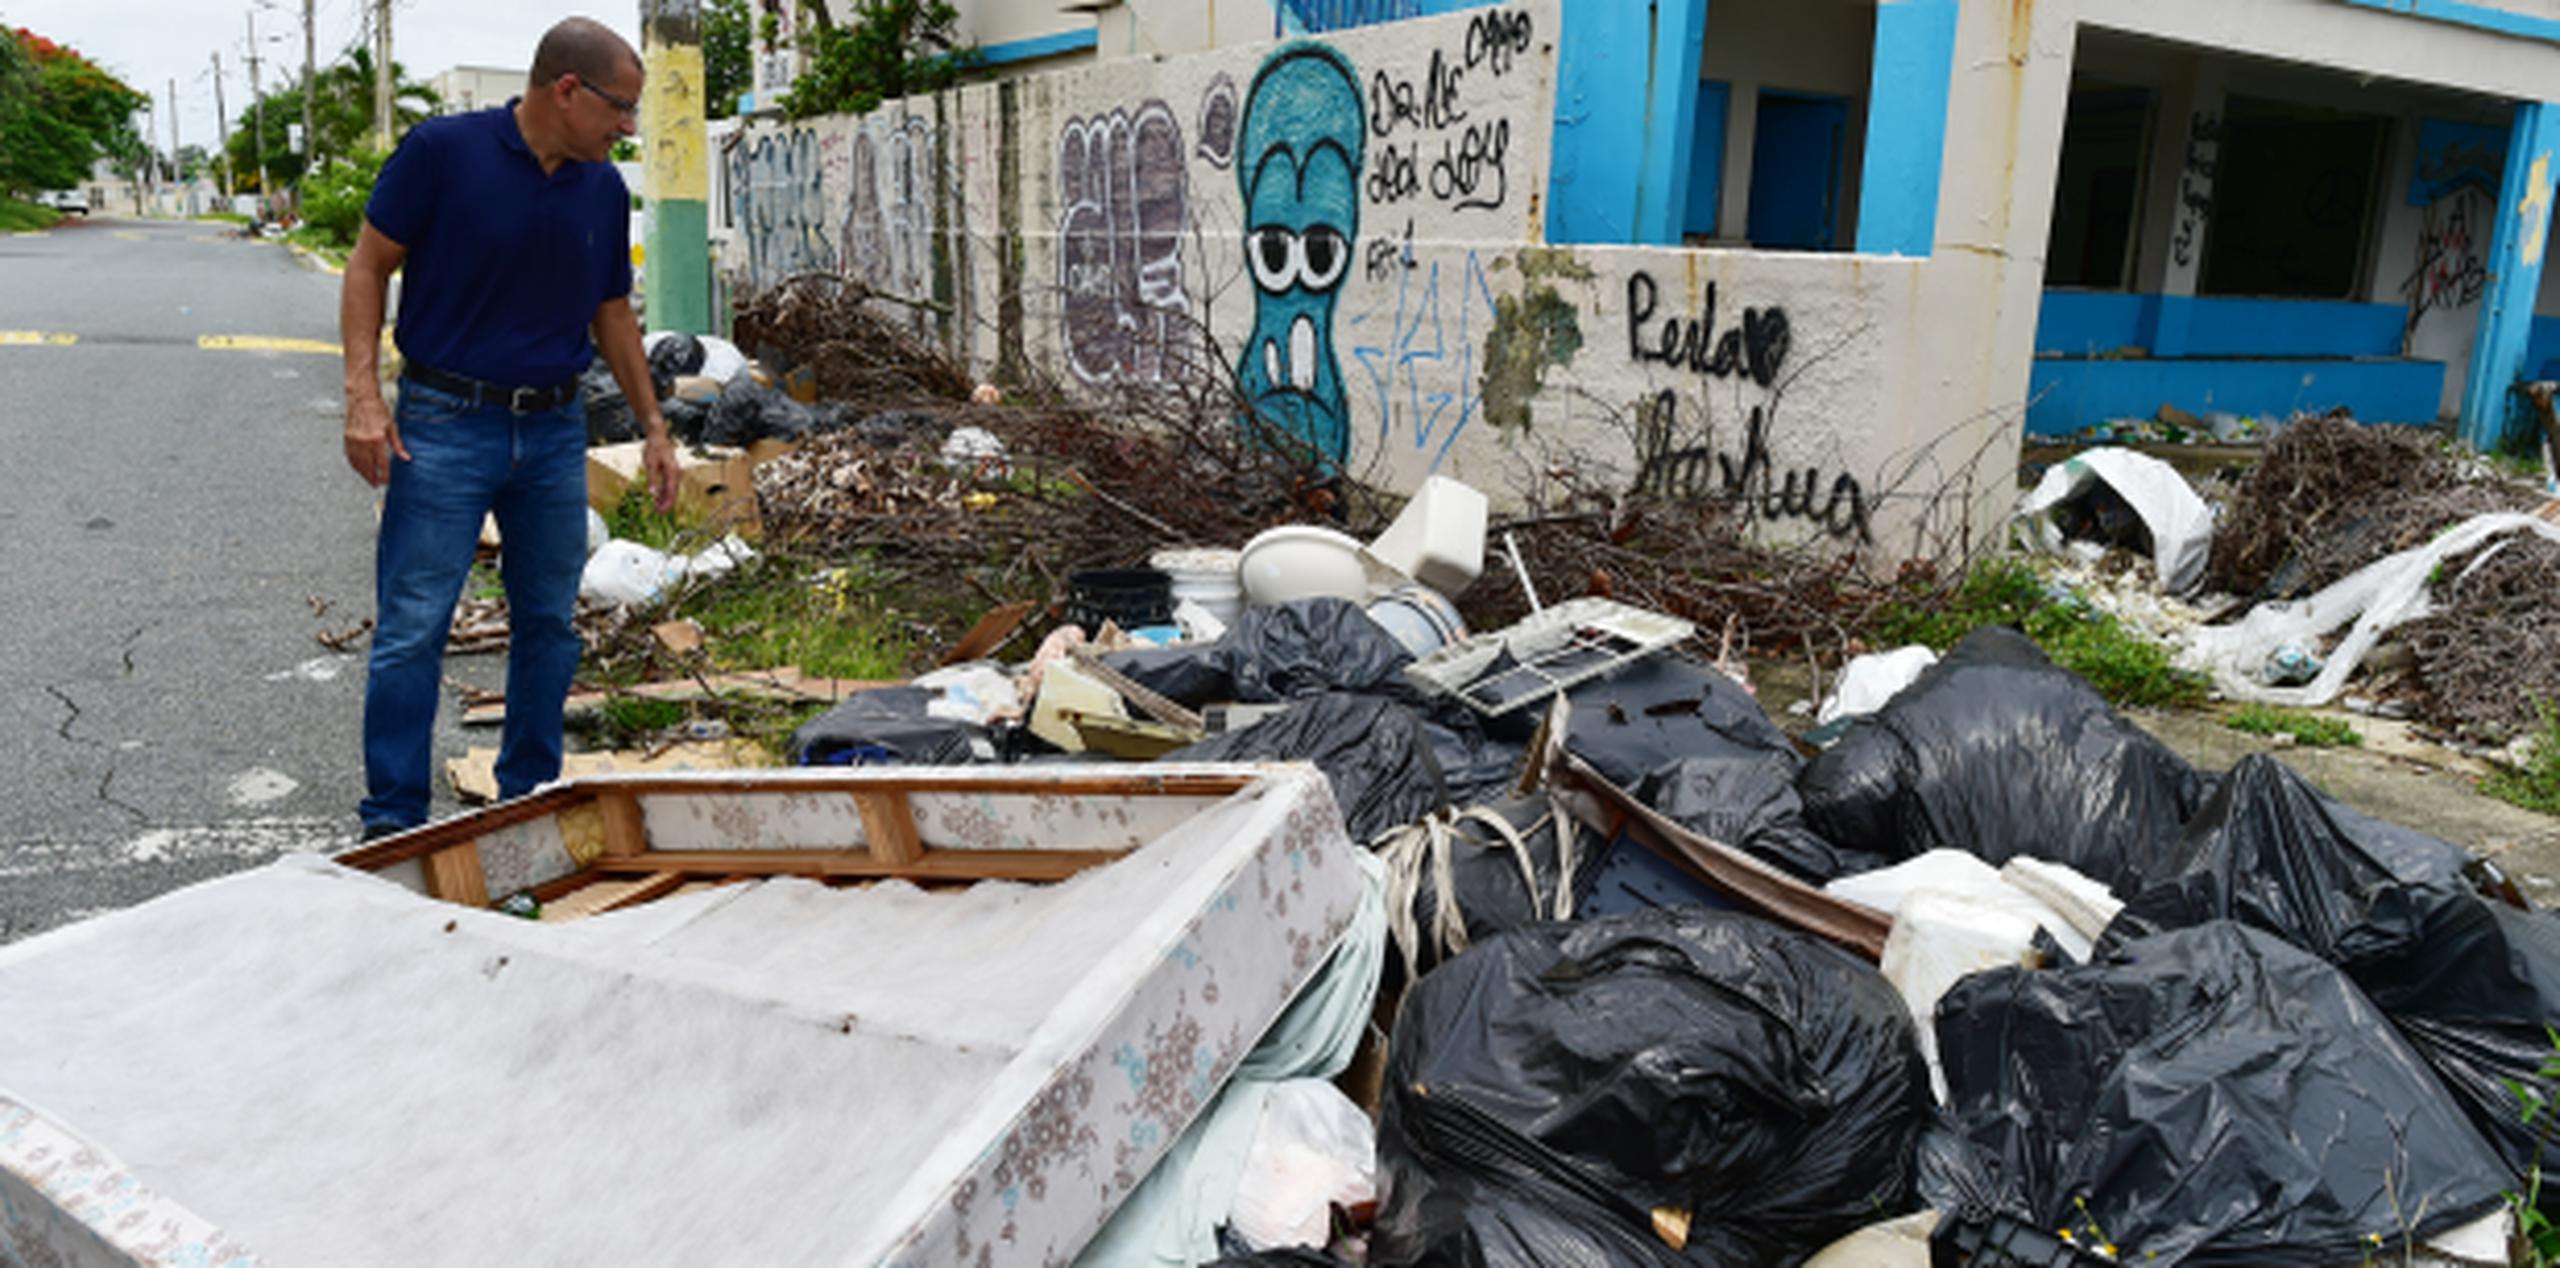 El municipio de Toa Baja, que atraviesa graves problemas fiscales, se ha visto recientemente inundado por la basura. (LUIS.ALCALADELOLMO@GFRMEDIA.COM)